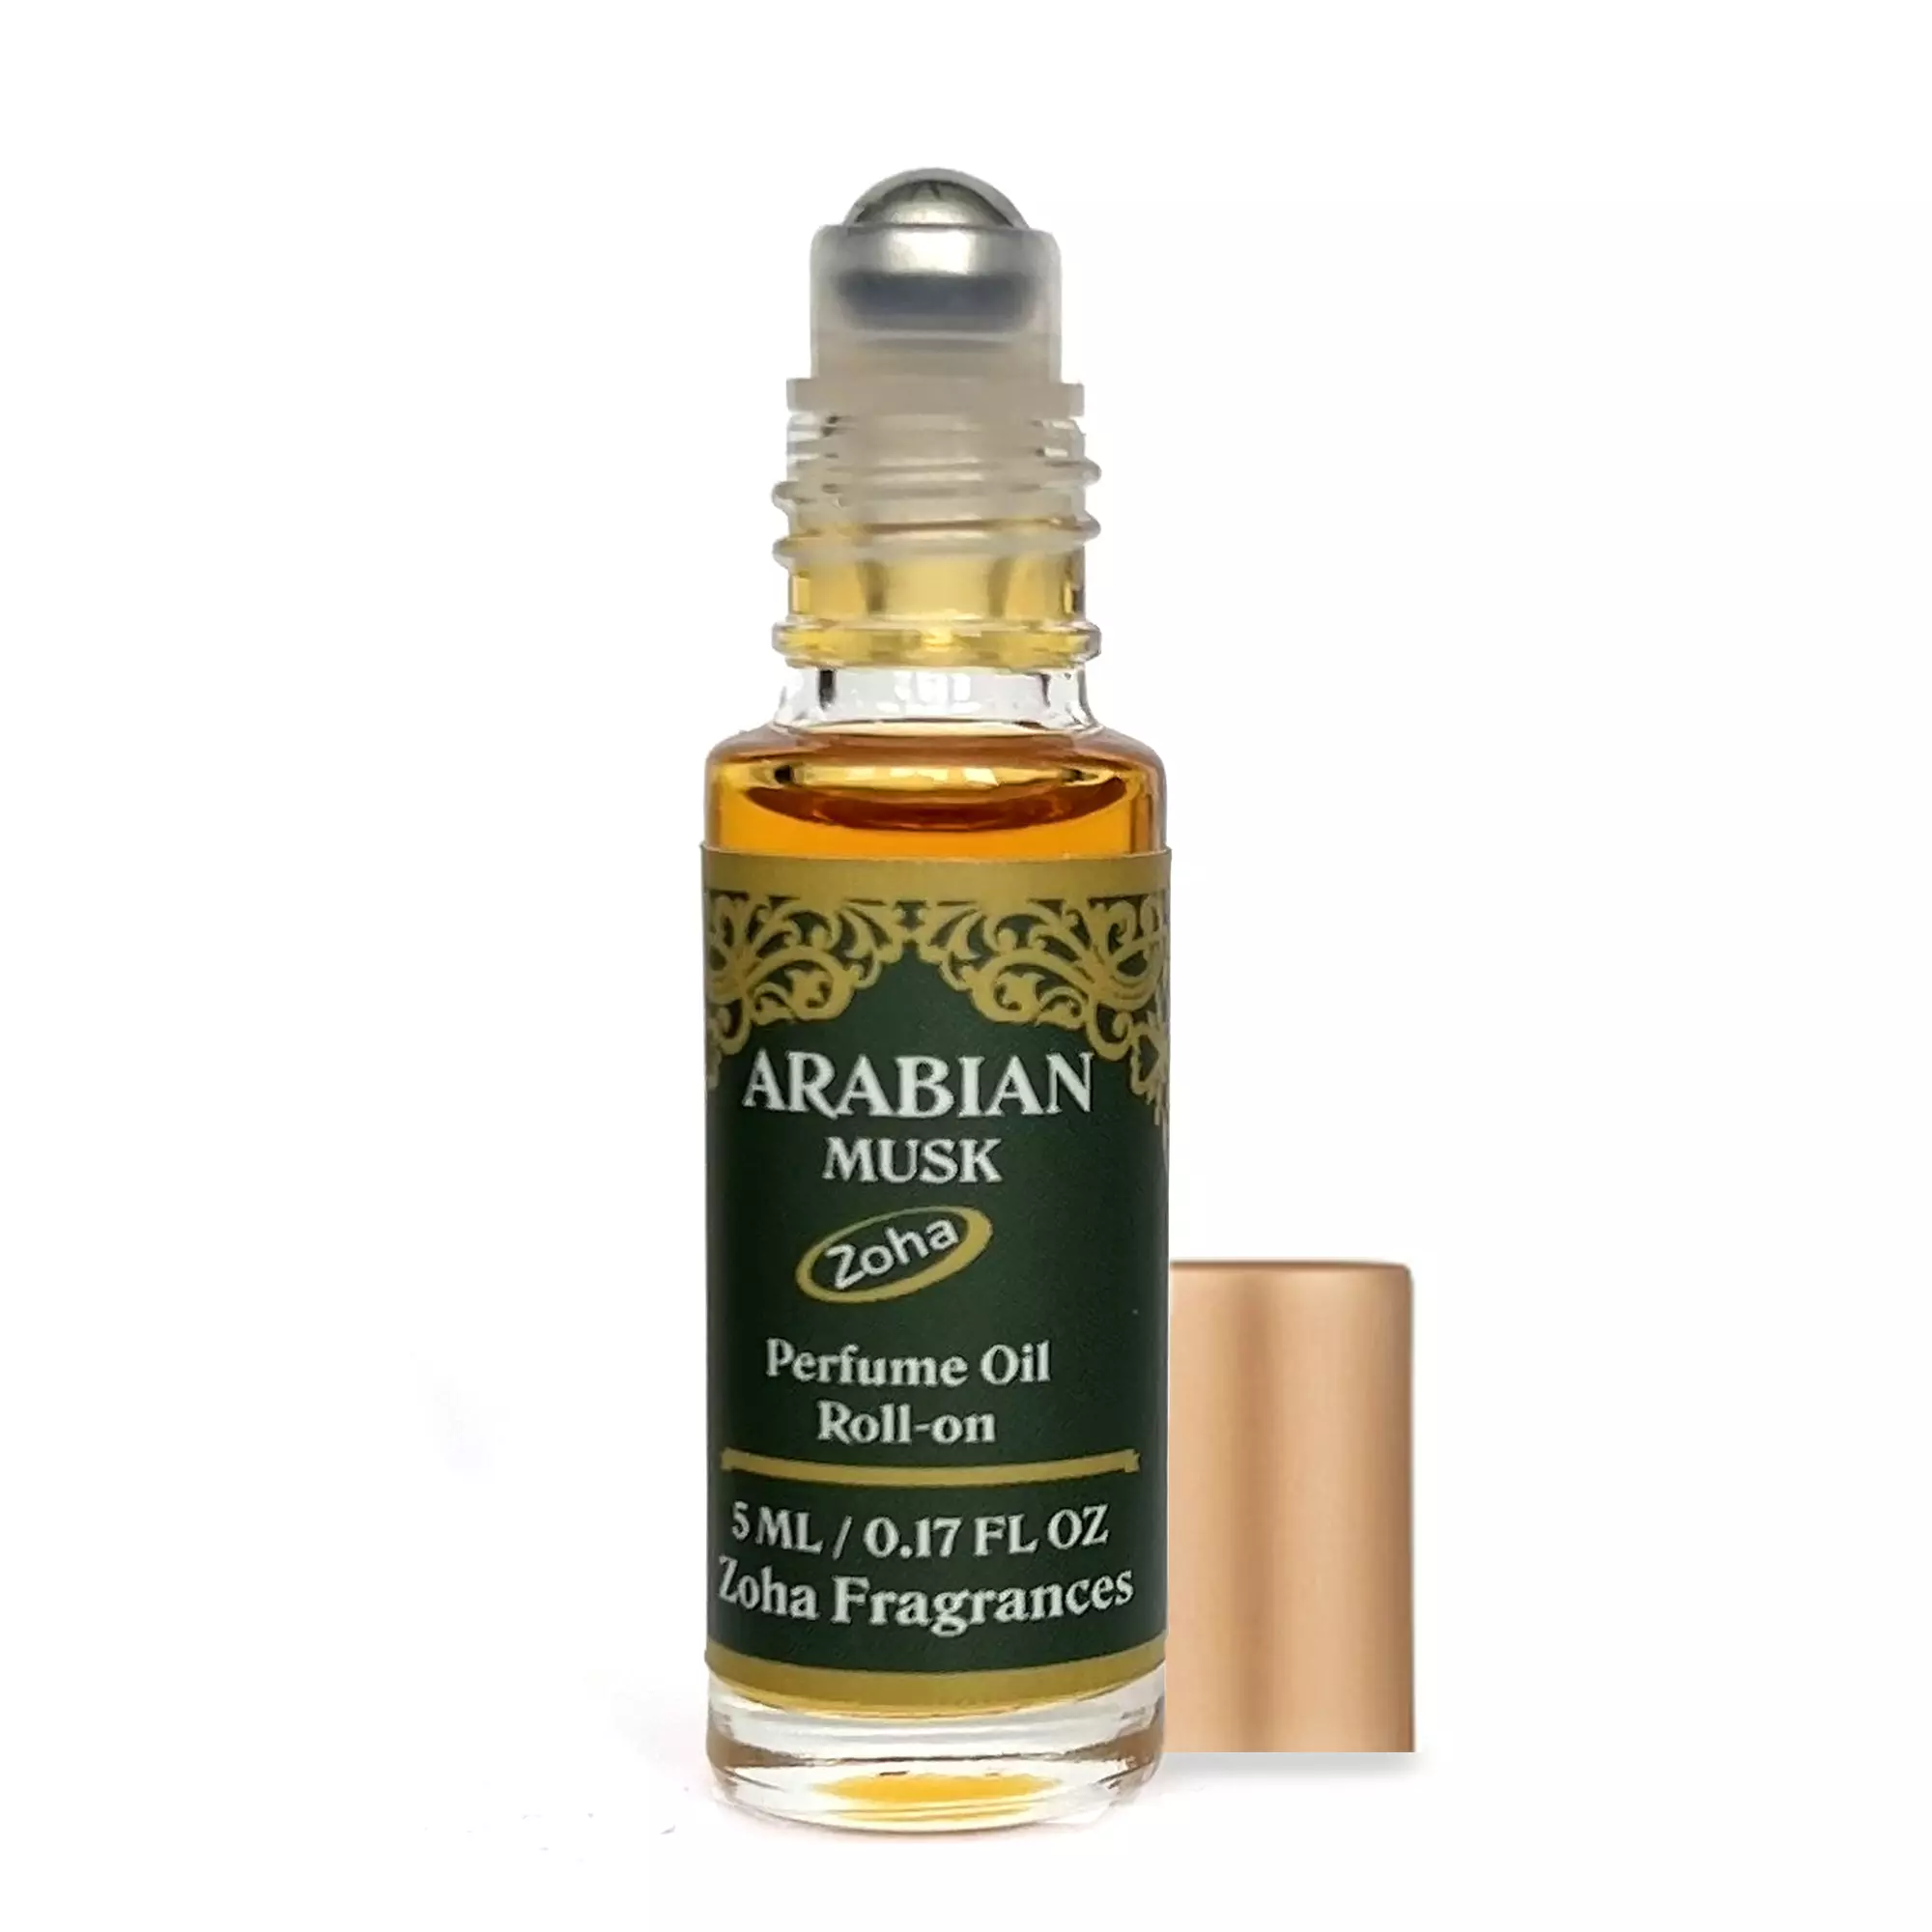 Arabian Musk - Alcohol free, oil Perfumes 